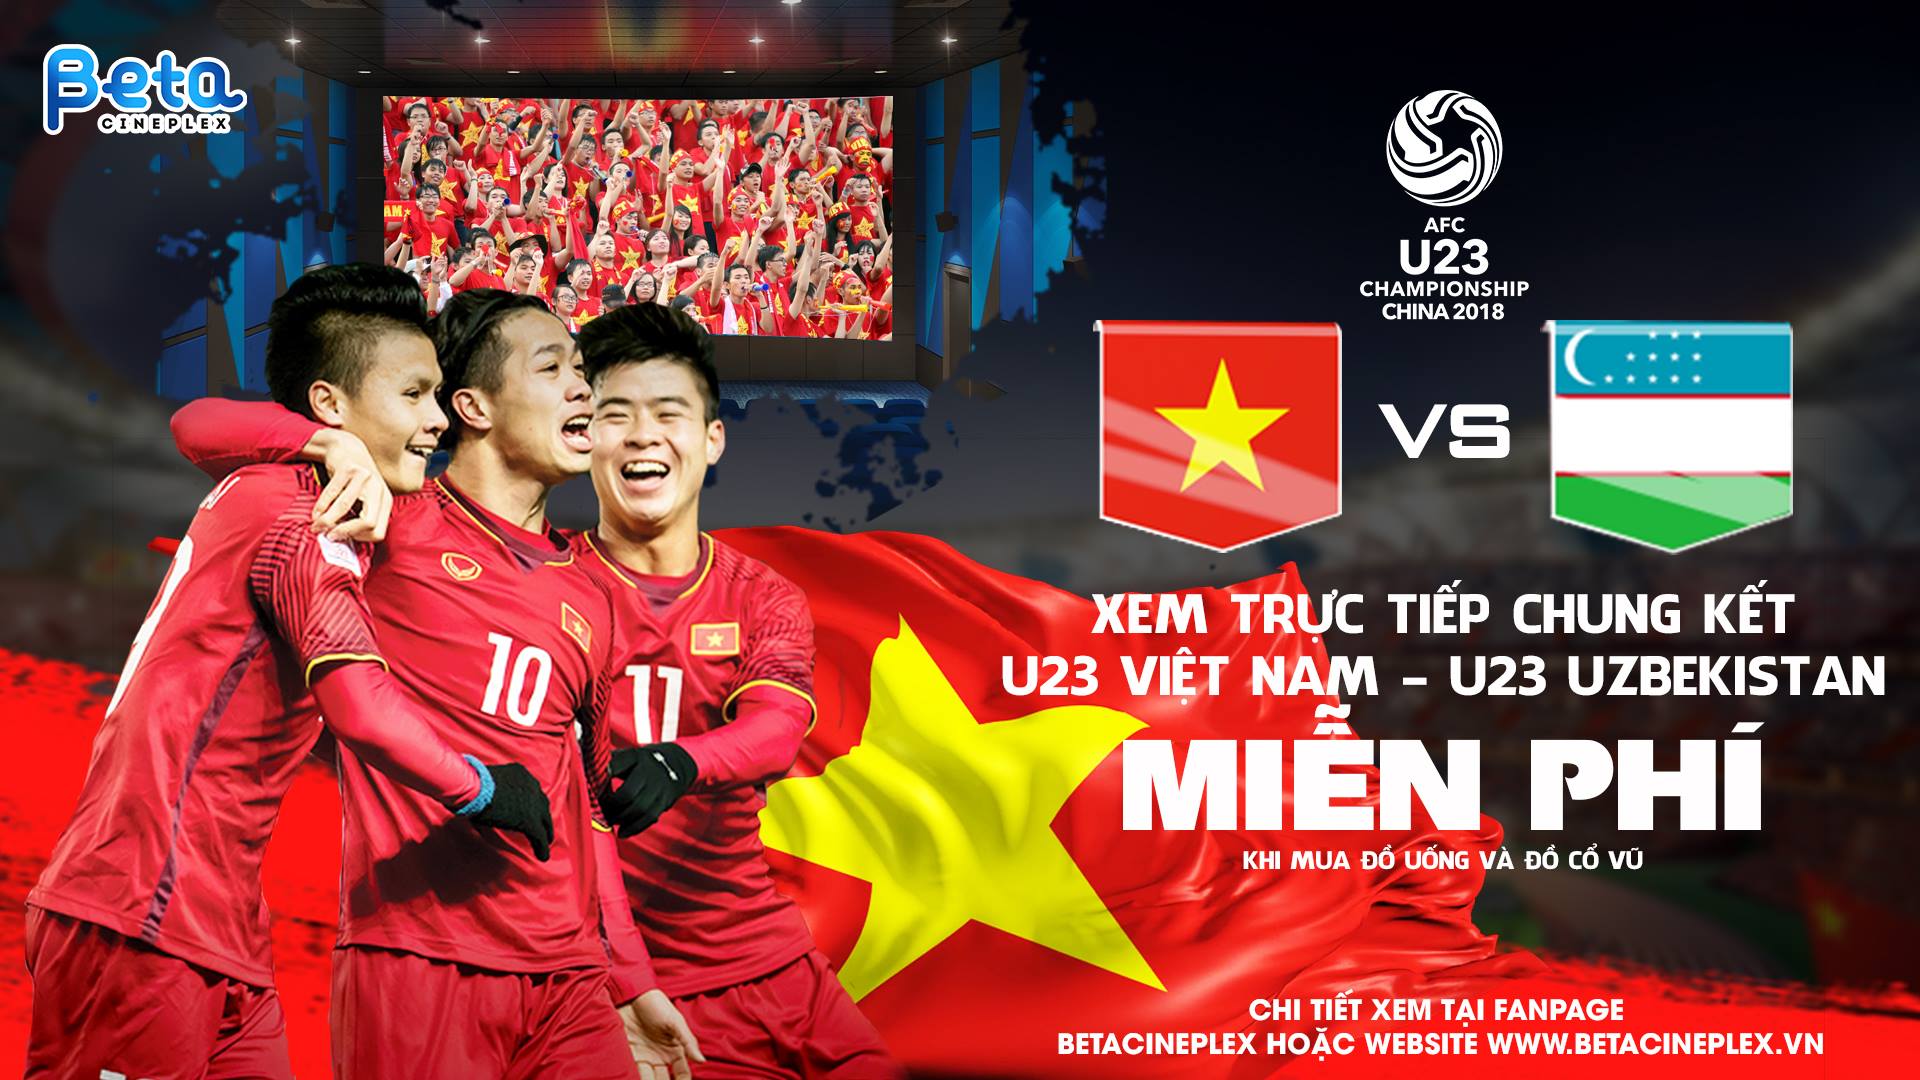 Tổng hợp các địa điểm xem chung kết U23 Việt Nam có màn hình lớn ở Hà Nội và Sài Gòn